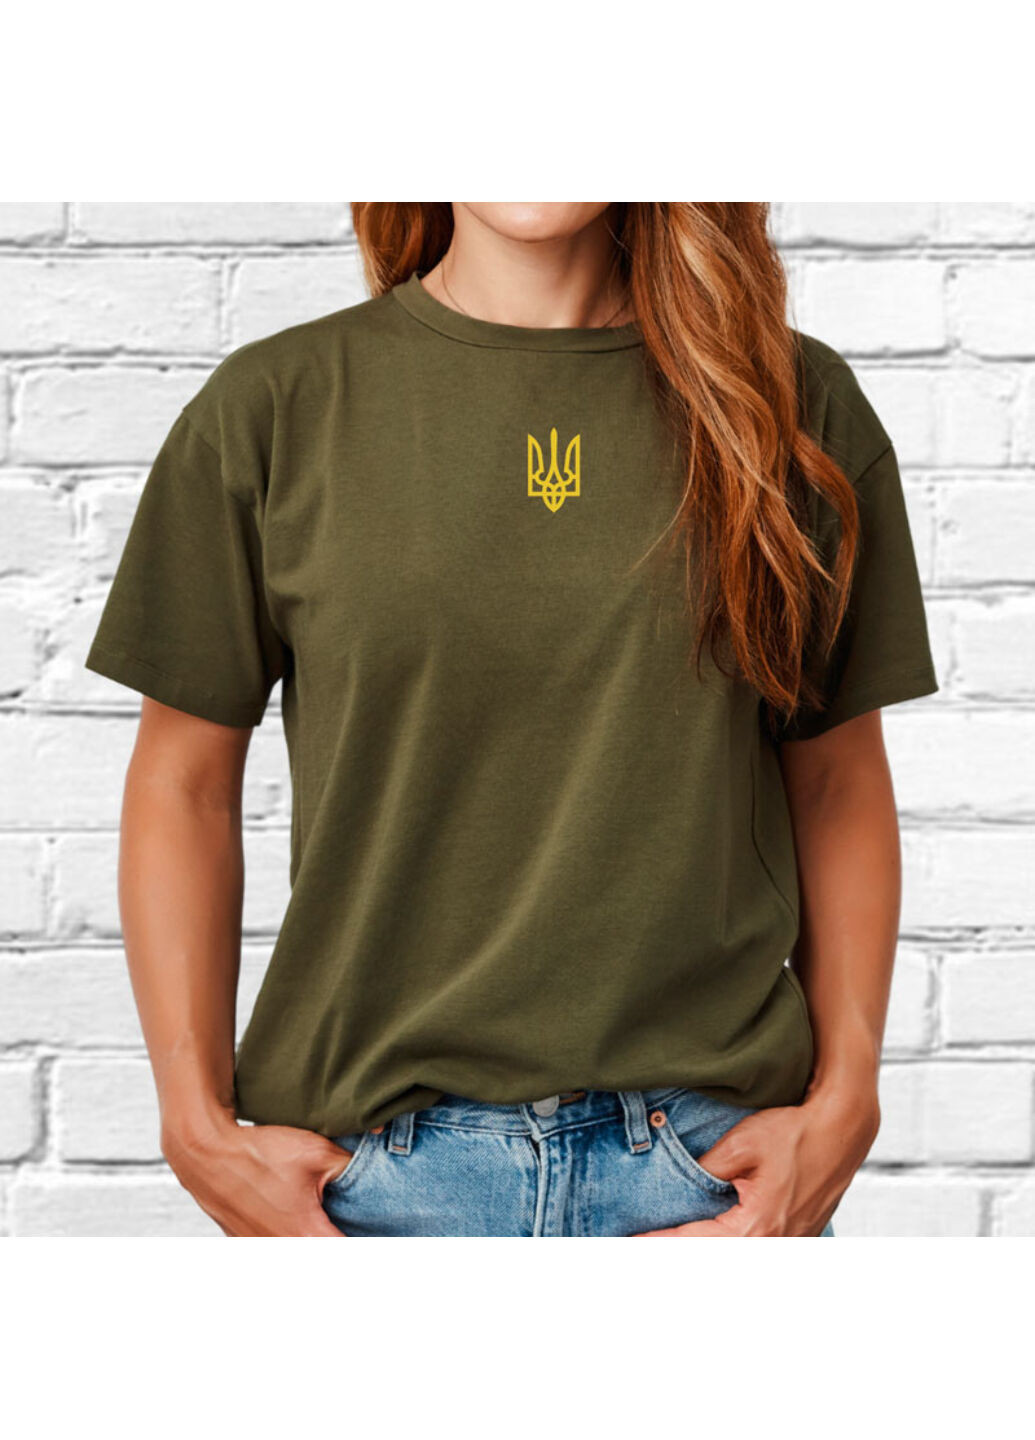 Хакі (оливкова) футболка з вишивкою золотого тризуба жіноча millytary green l No Brand